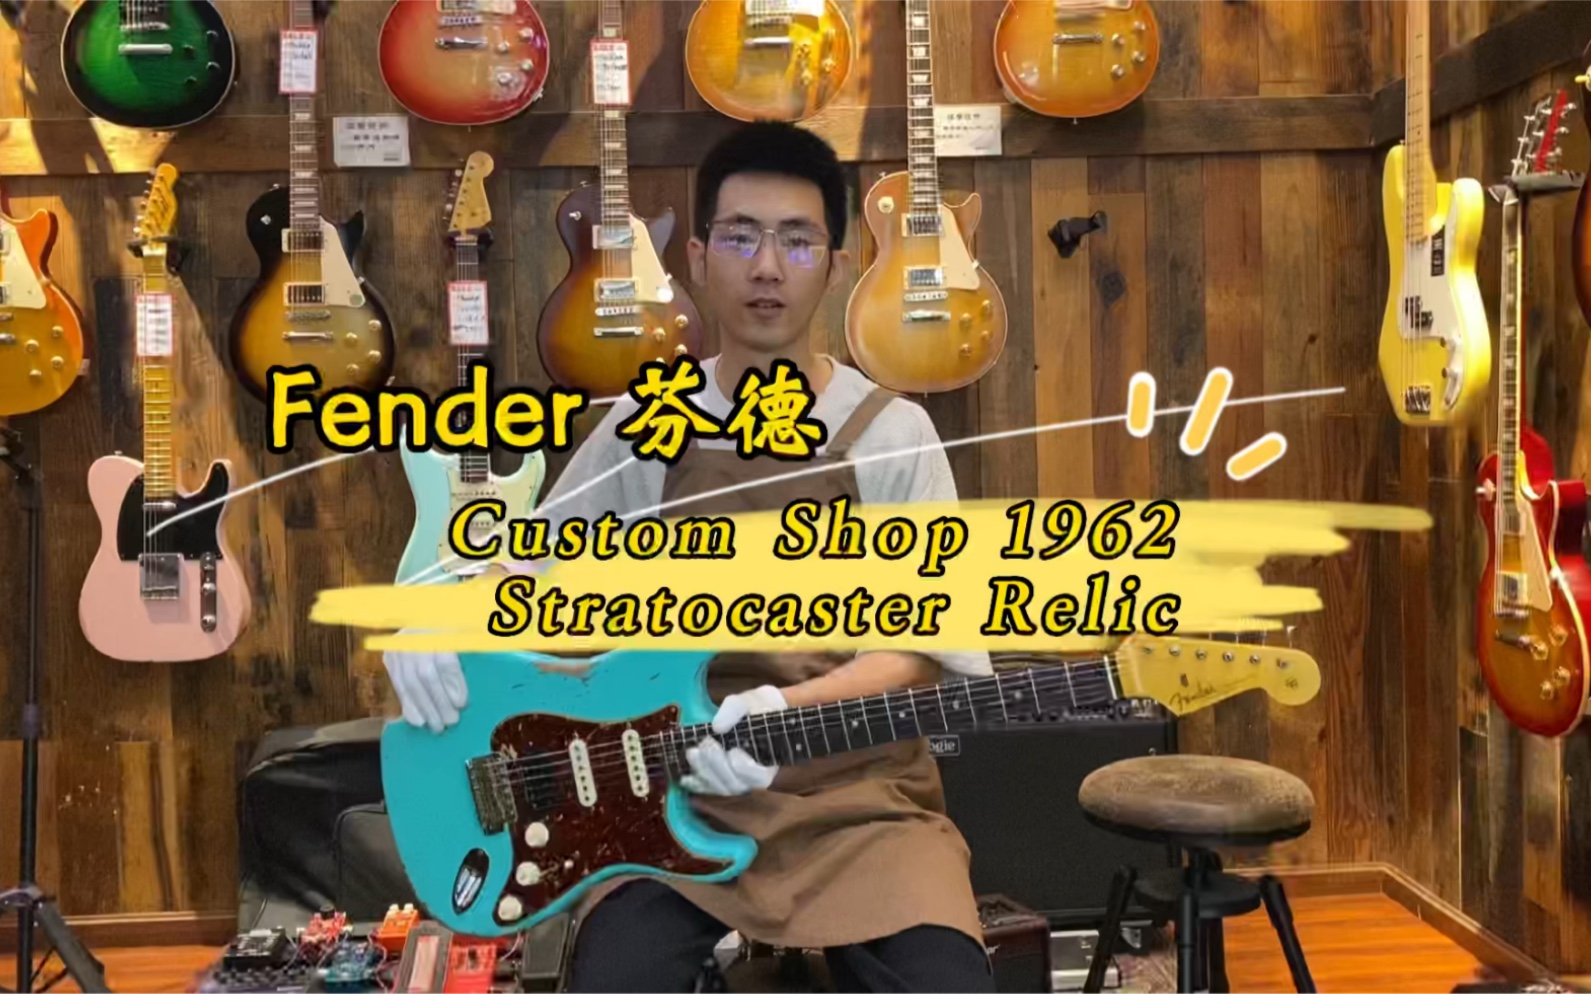 芬德Fender CS62 Custom Shop 1962 Stratocaster Relic重度做旧电吉他 高配手工缠绕拾音器 成都海鸥琴行解说视听